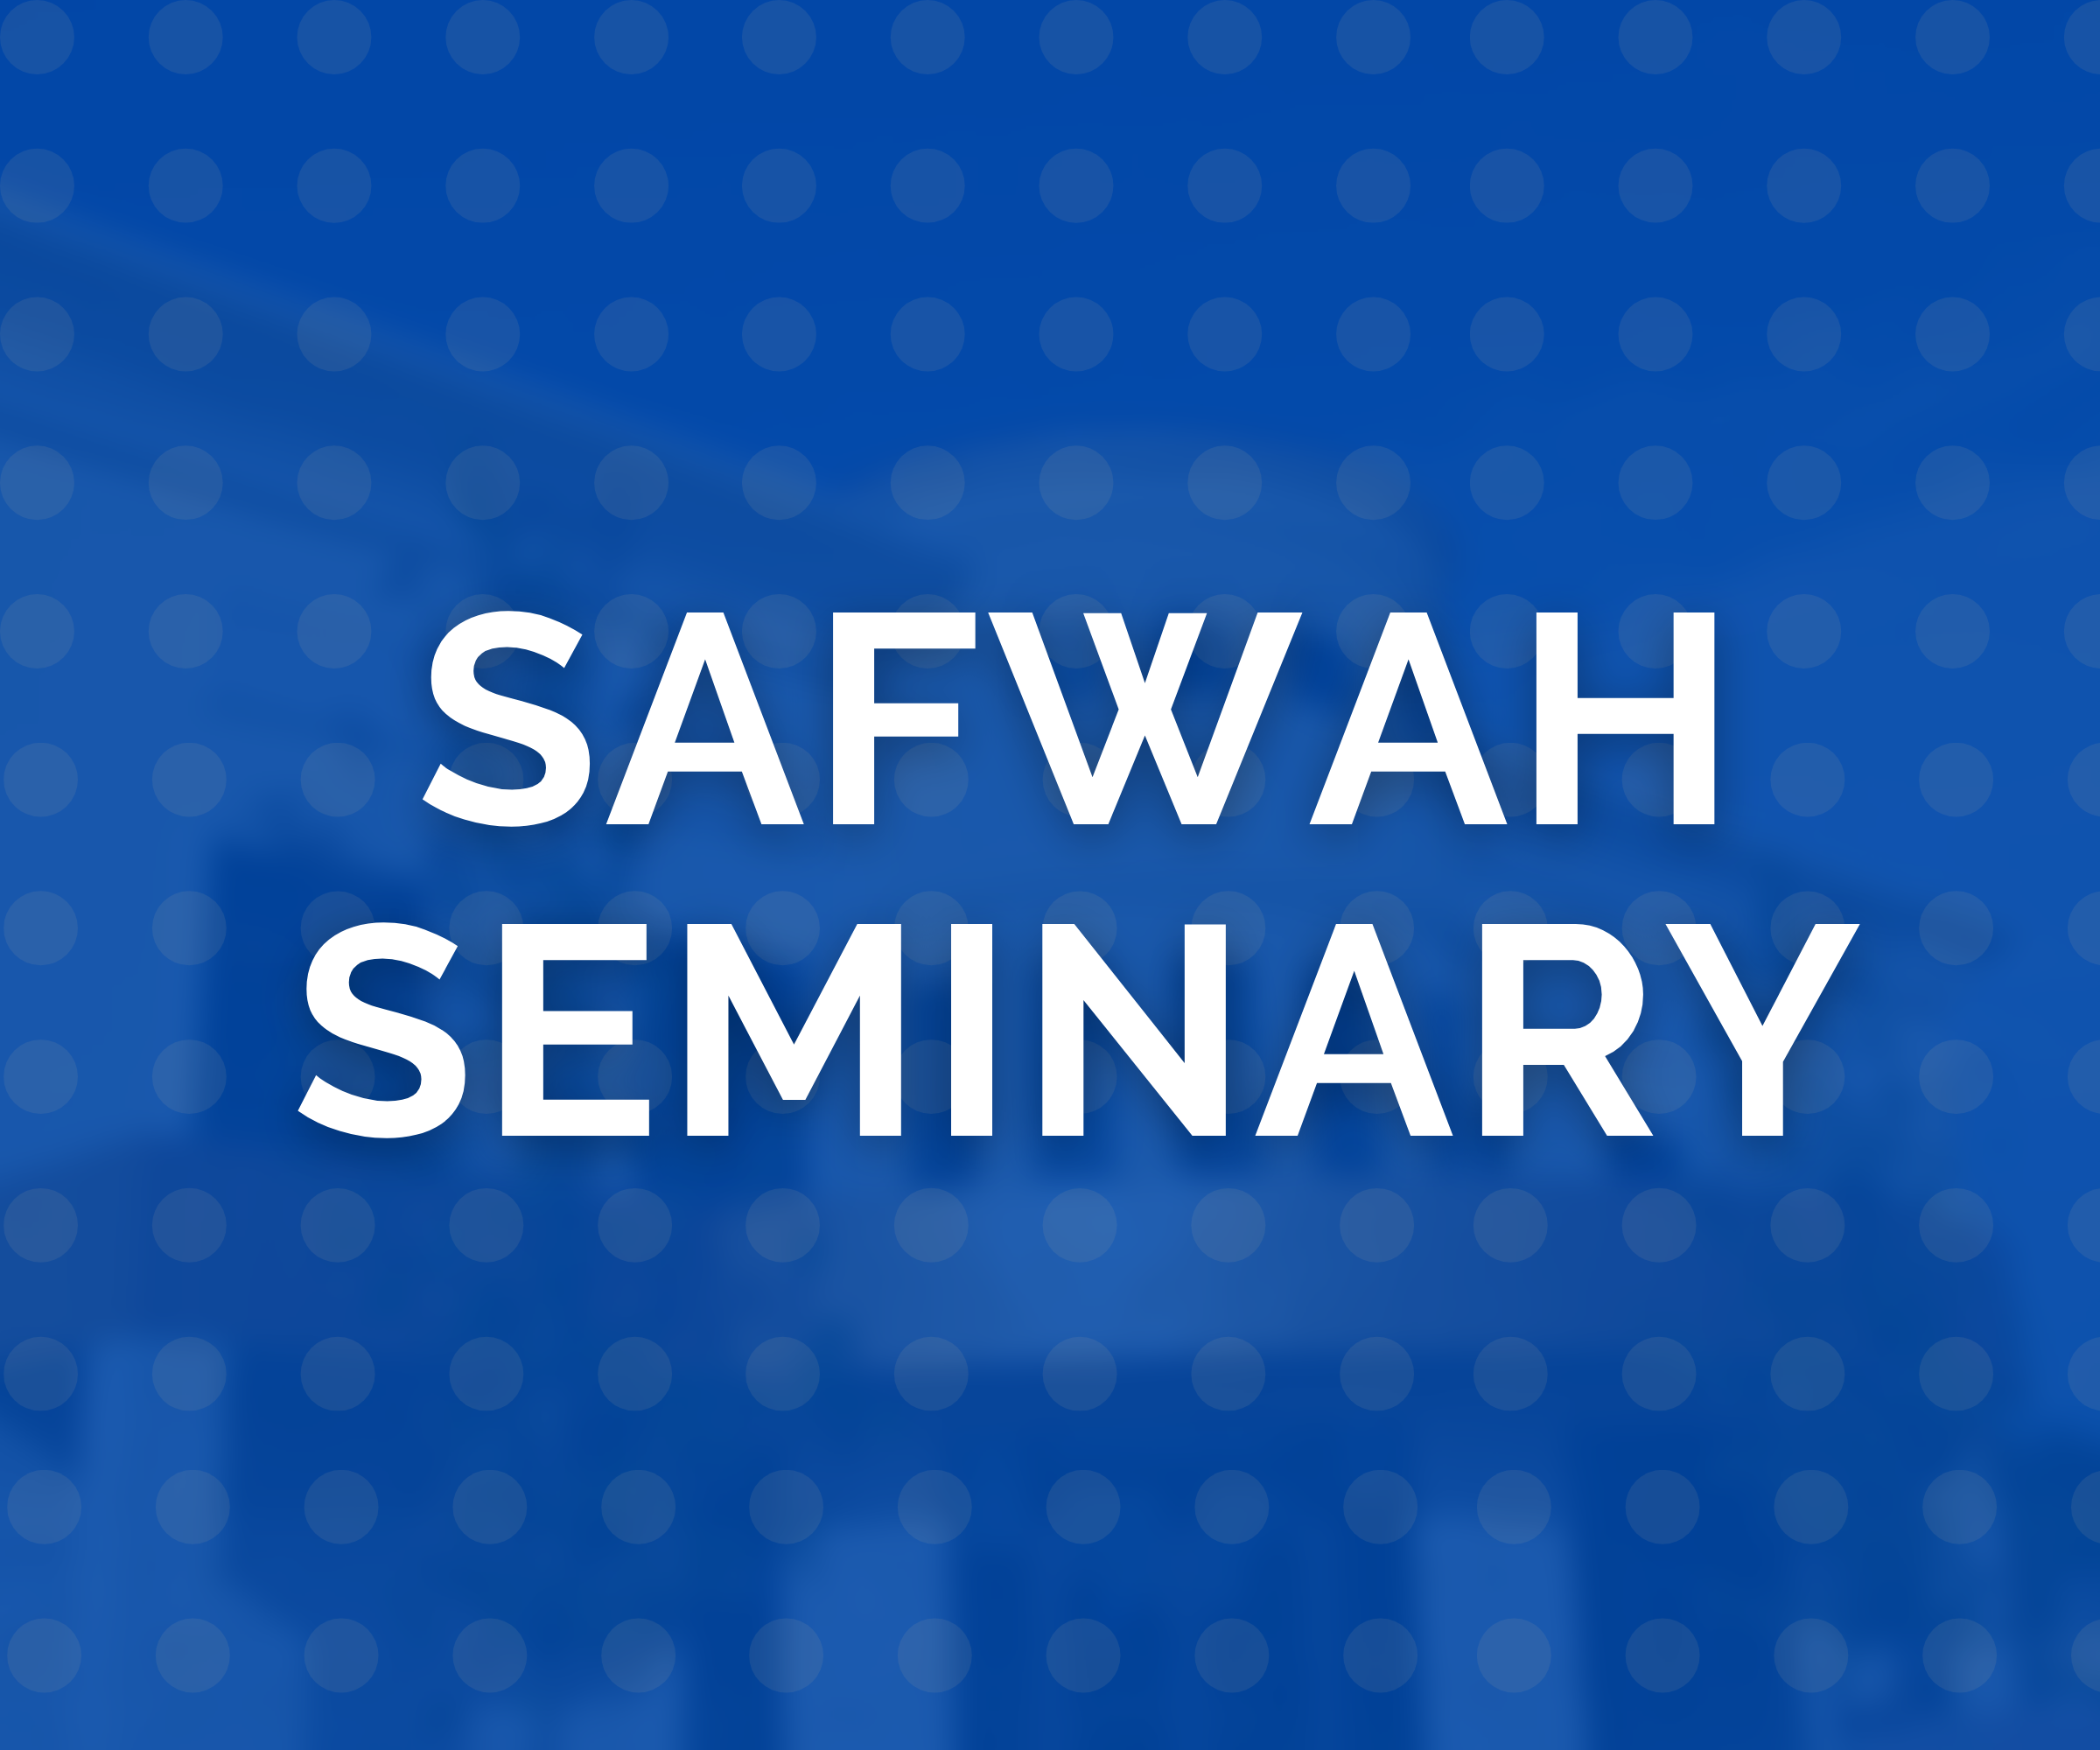 Safwah Seminary